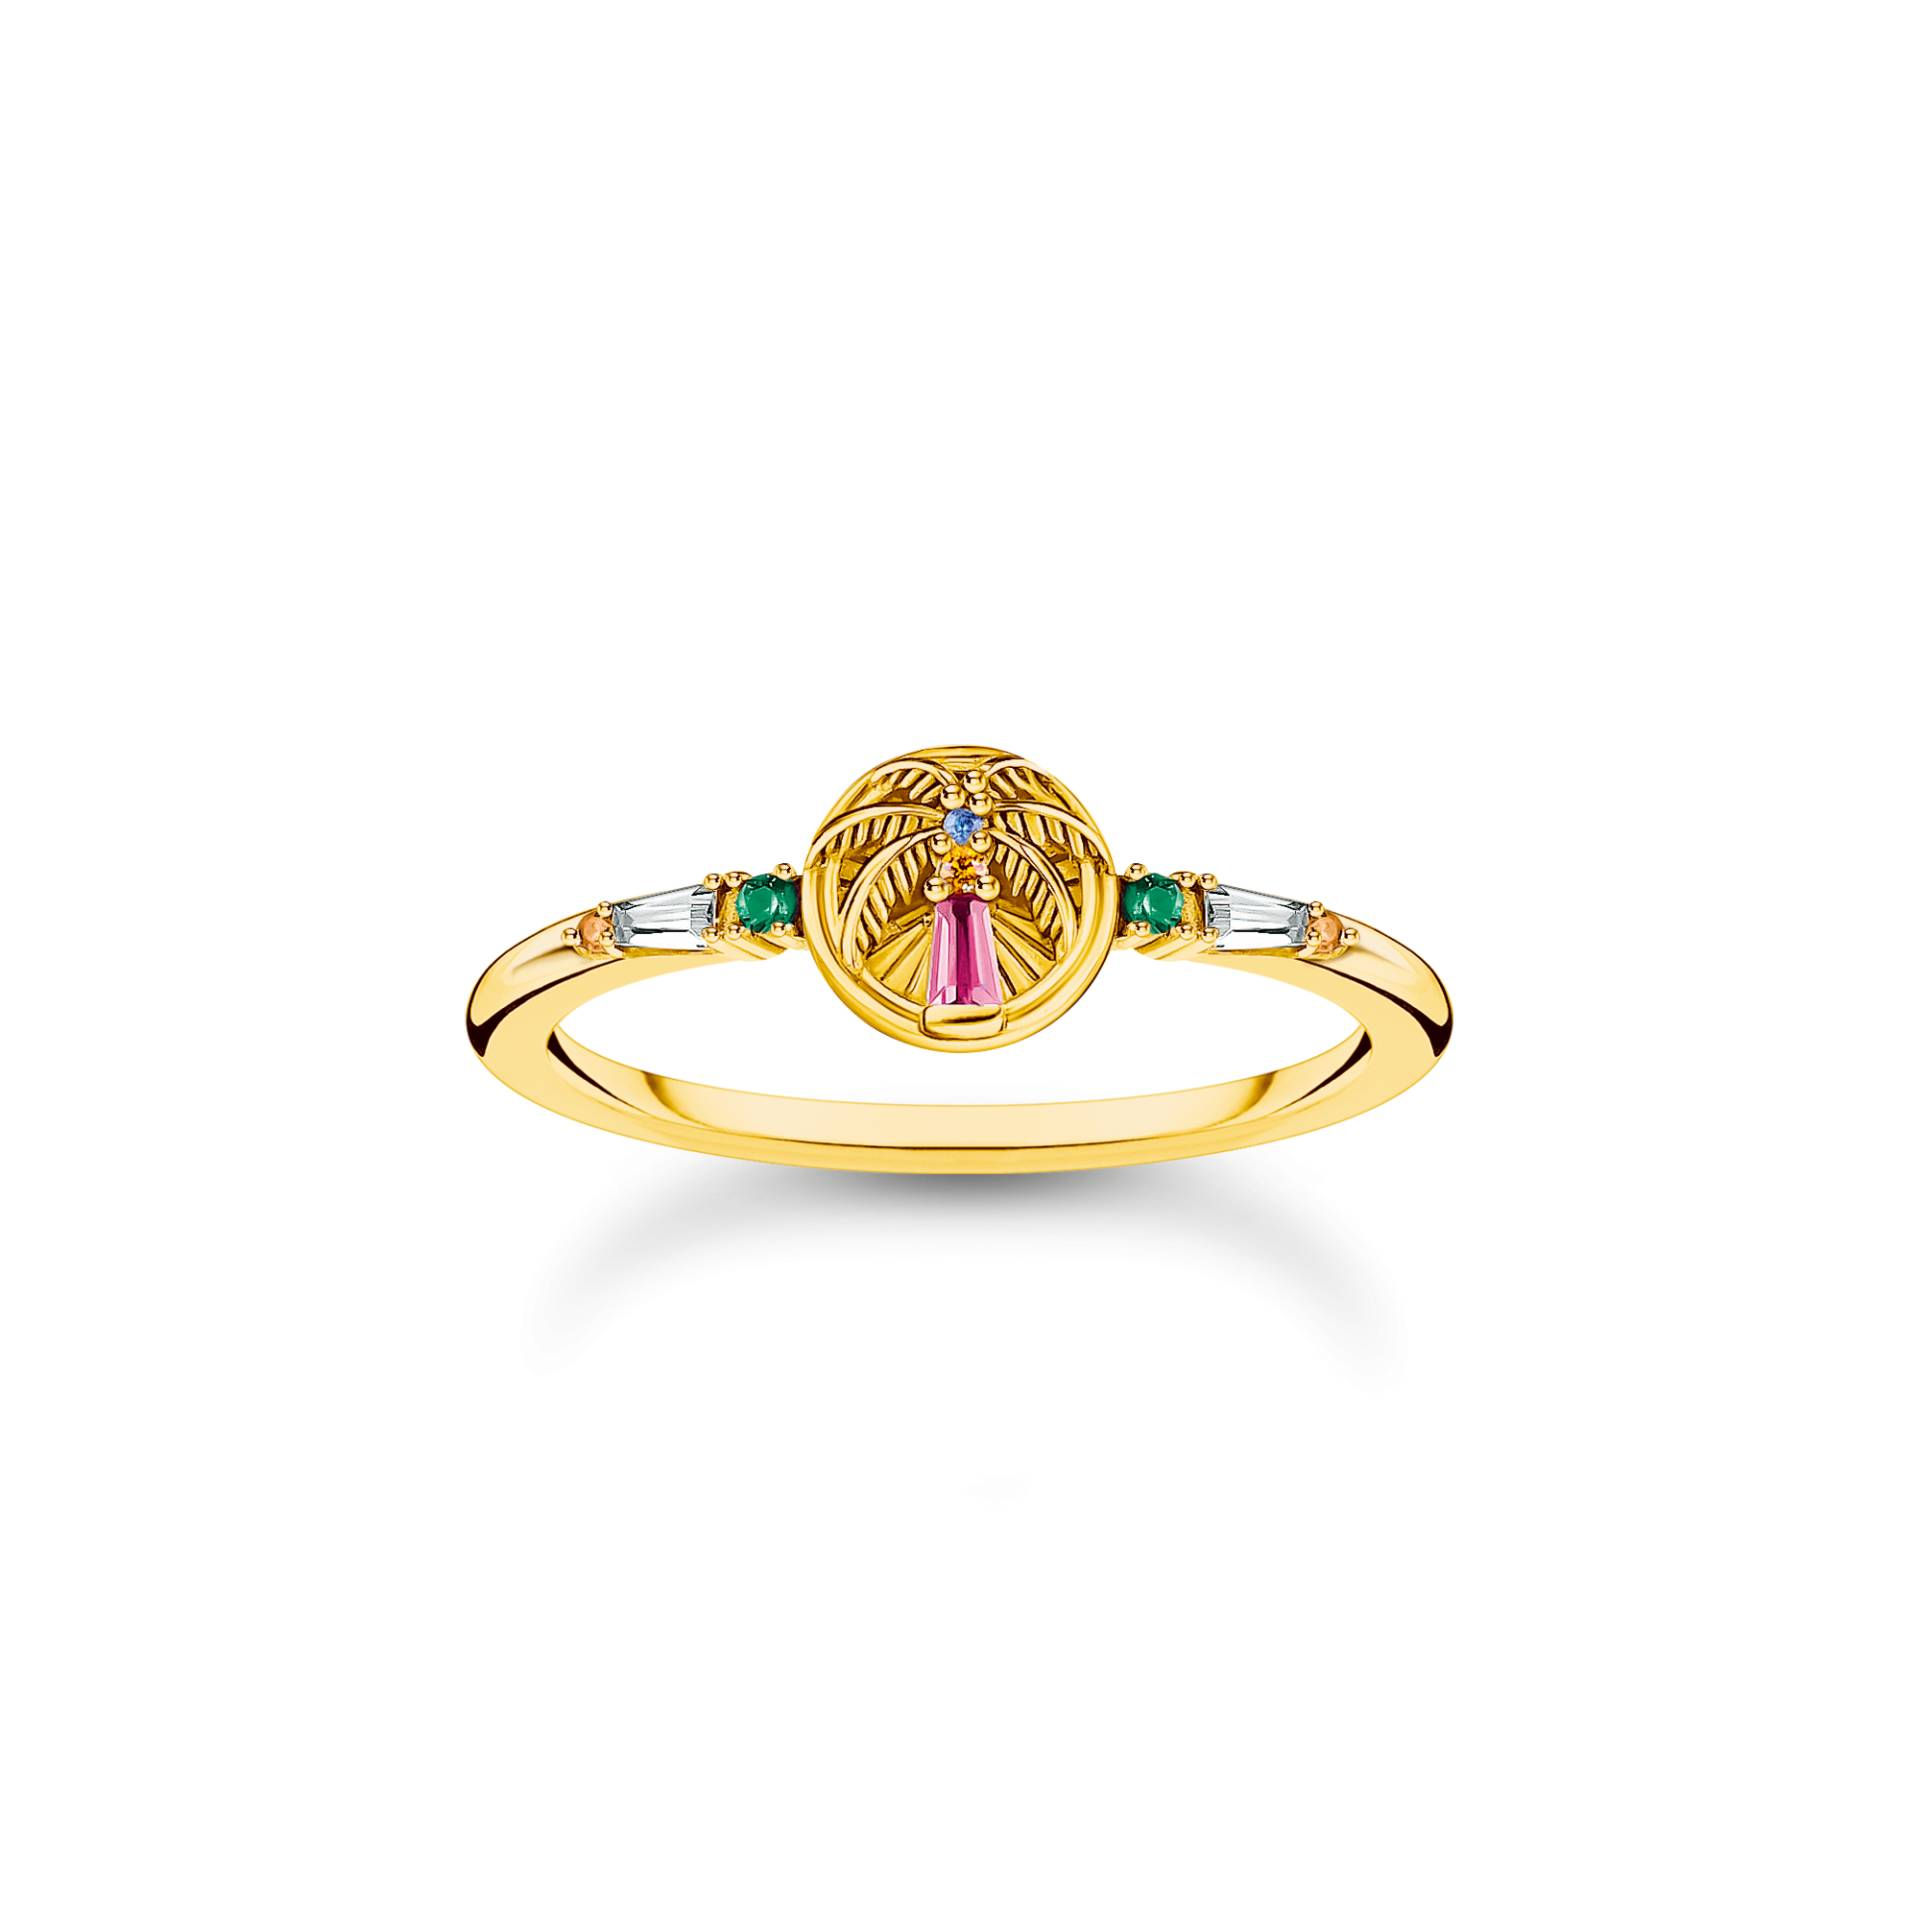 Thomas Sabo Ring mit Palme und bunten Steinen vergoldet mehrfarbig TR2457-488-7-48 von Thomas Sabo